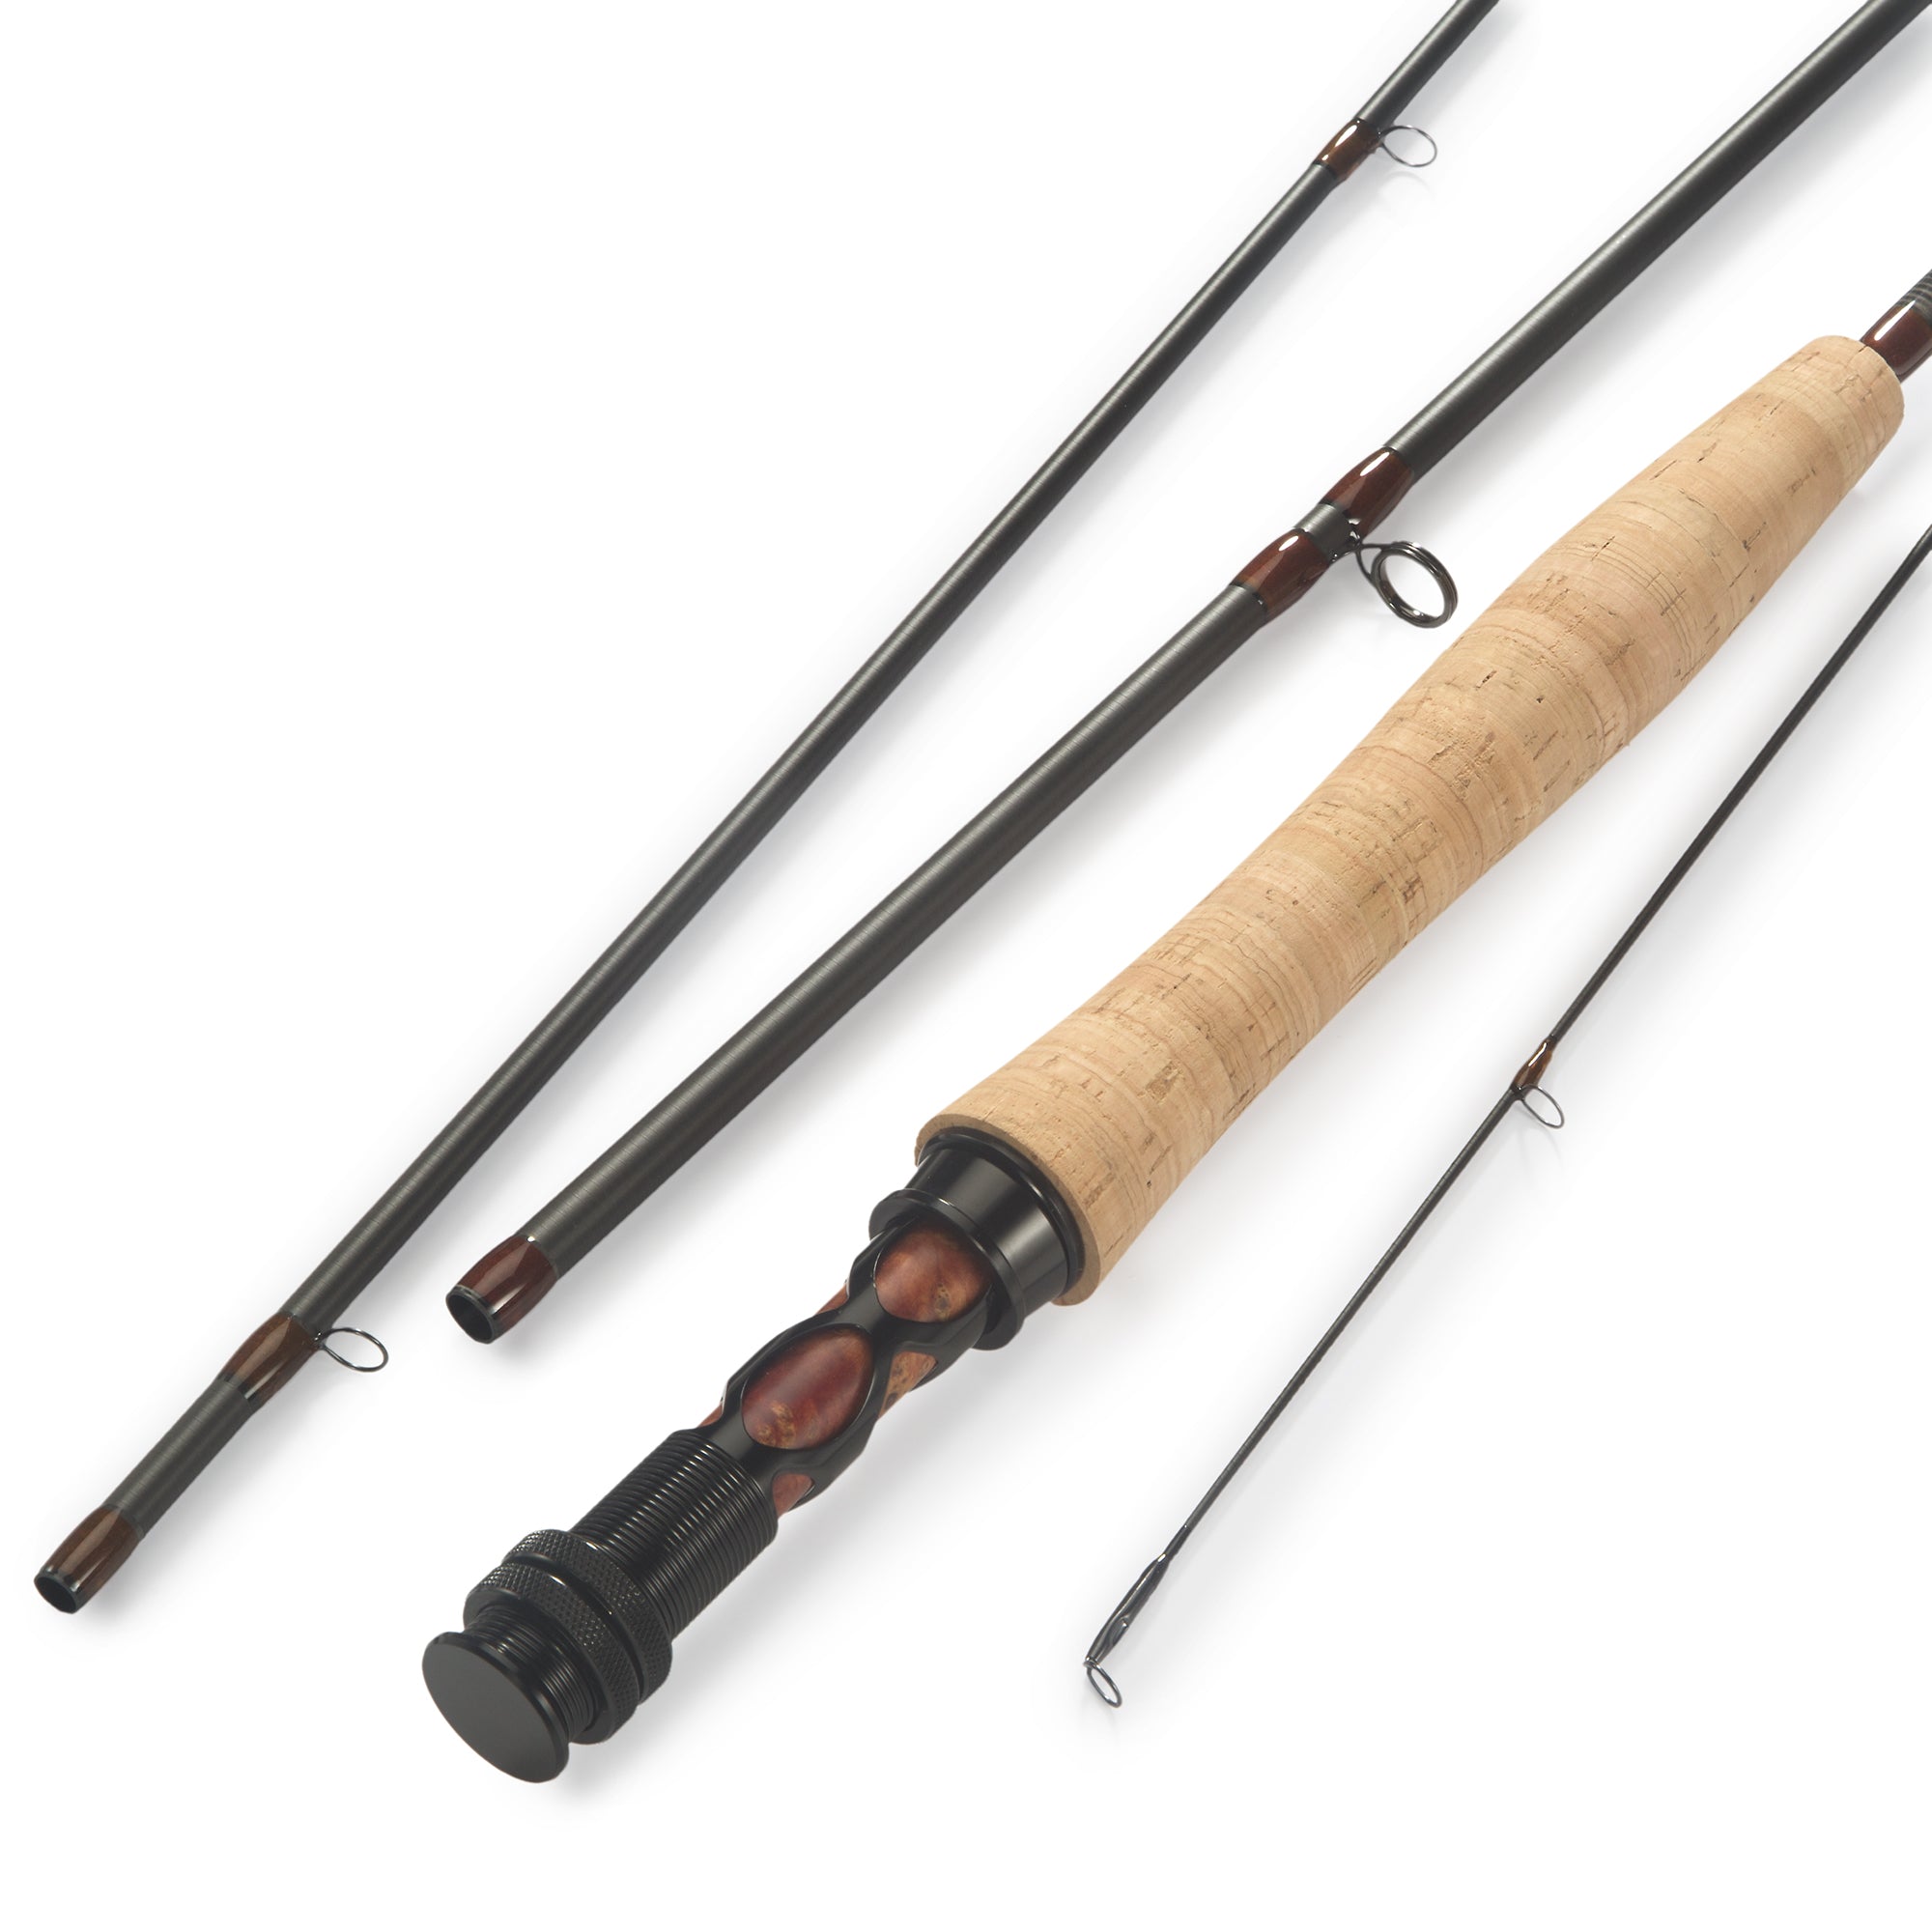 Bakk Series Fly Rod – KISTLER Fishing